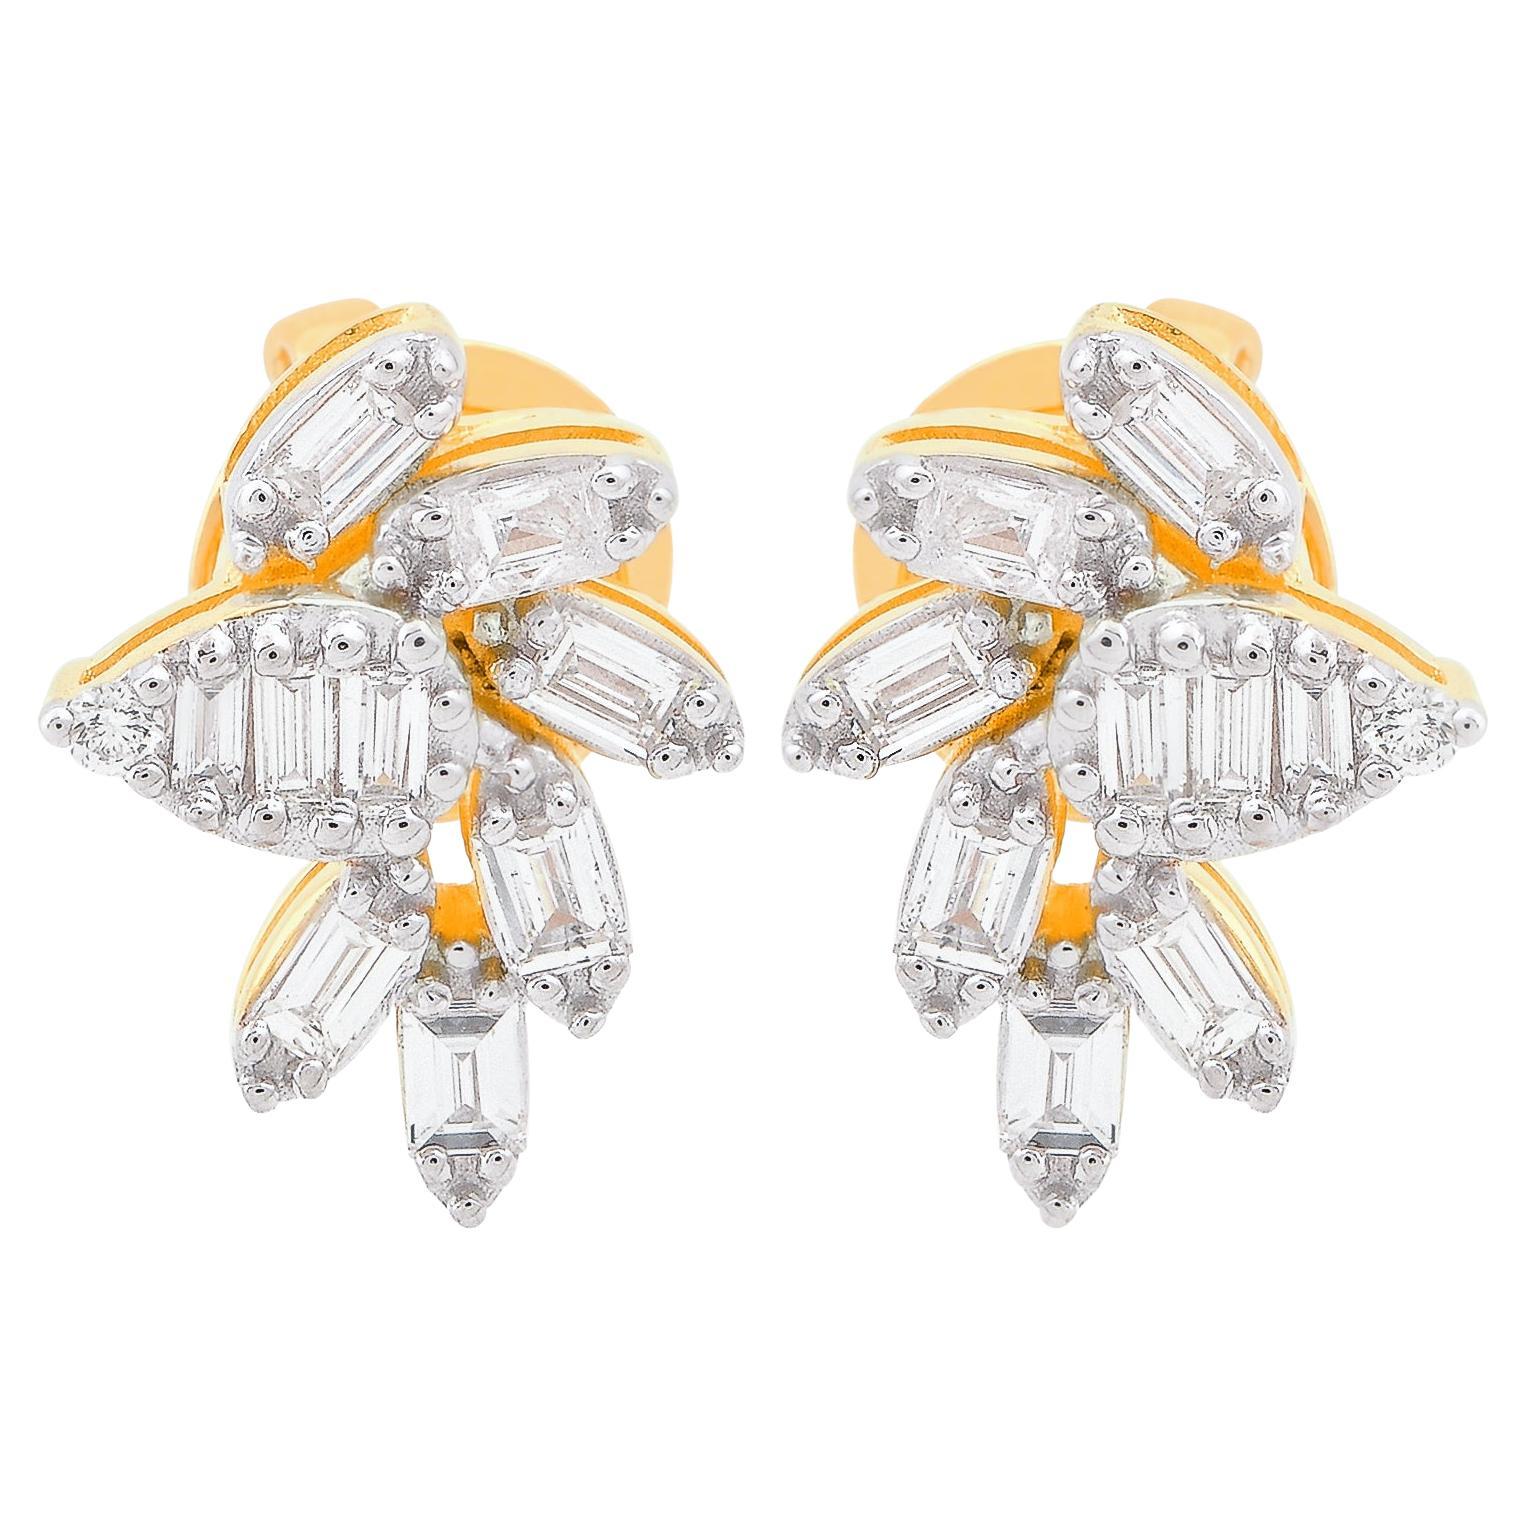 0.50 Carat Baguette Diamond Stud Earrings Solid 18k Yellow Gold Fine Jewelry